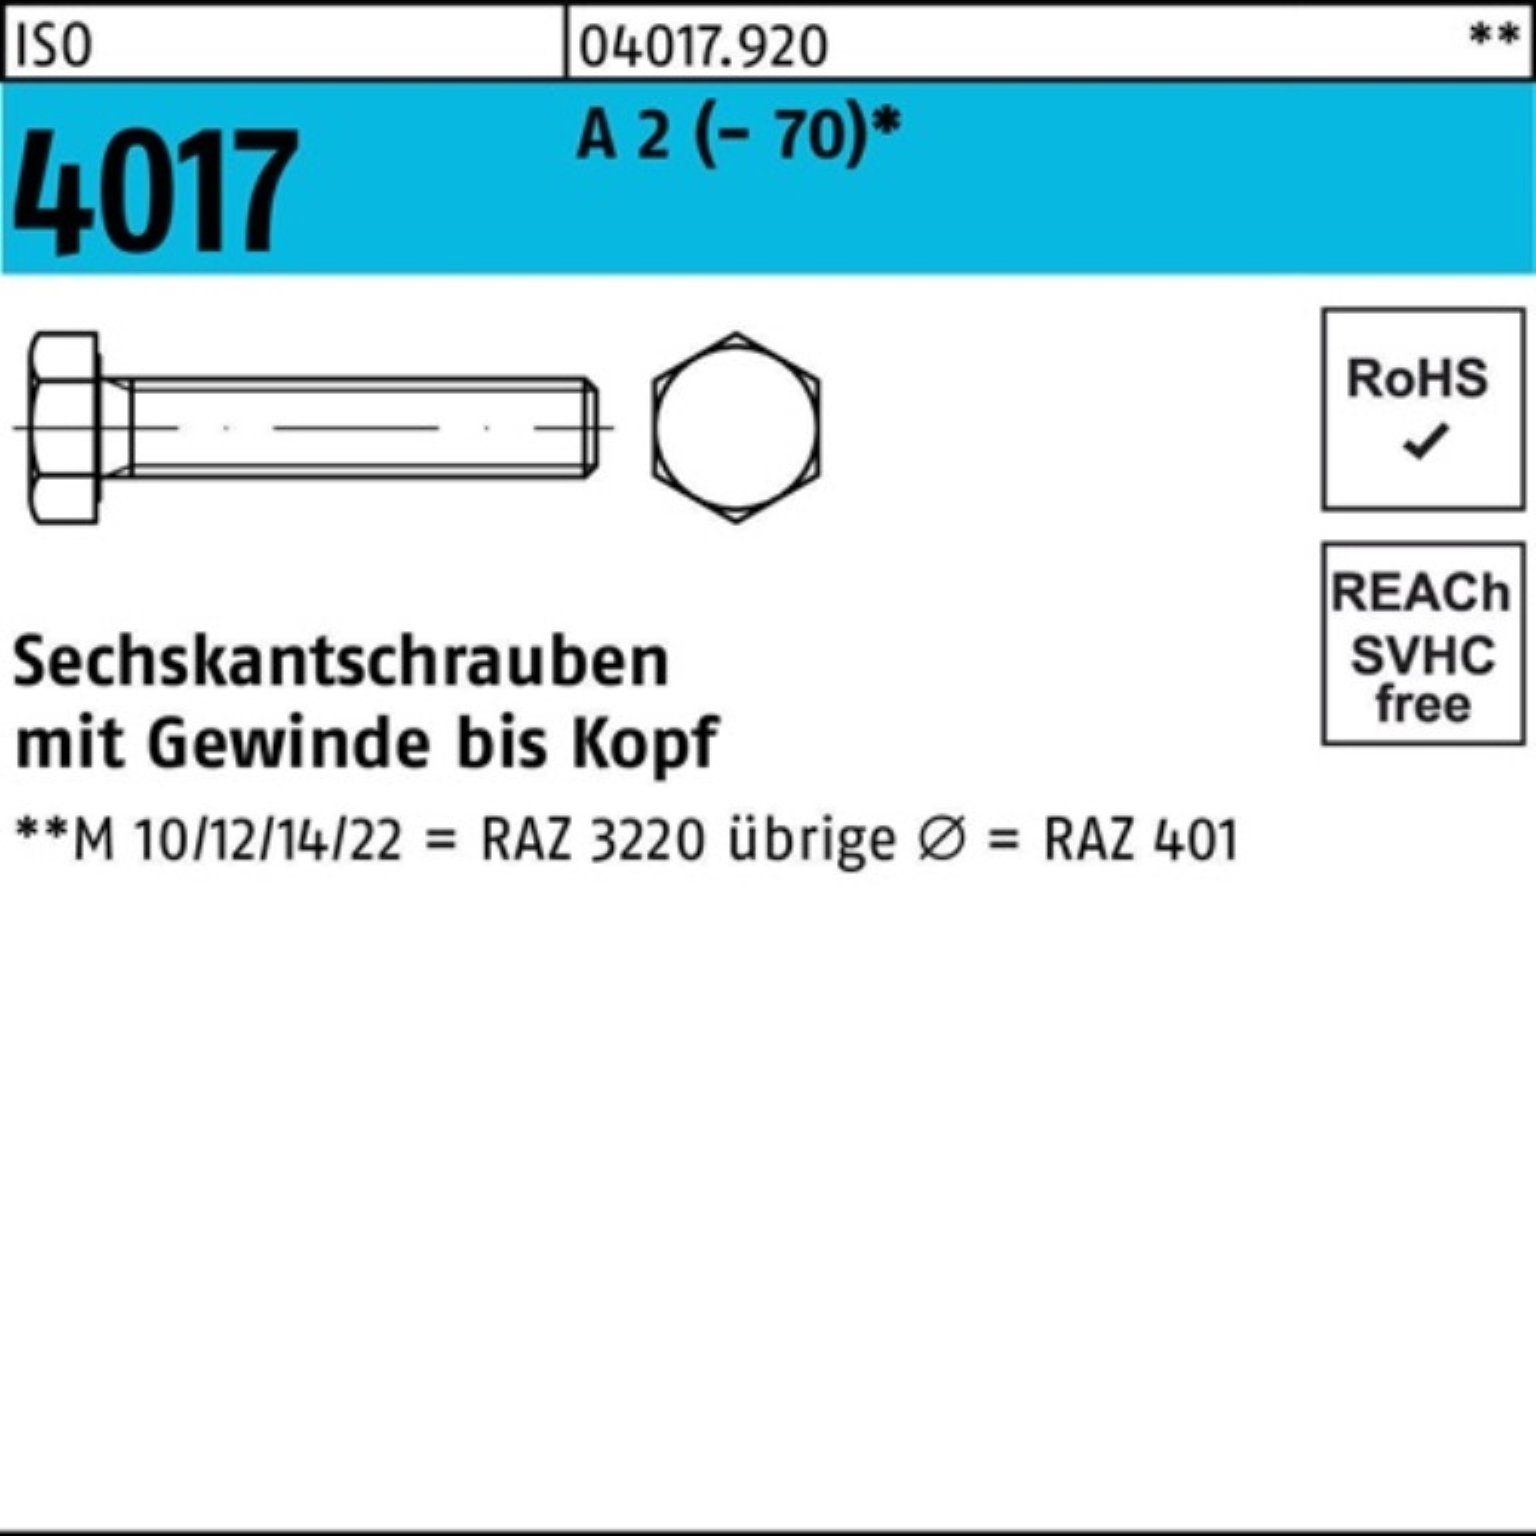 100 Sechskantschraube ISO VG 50 2 M10x A Stück Sechskantschraube Bufab 4017 100er Pack (70)